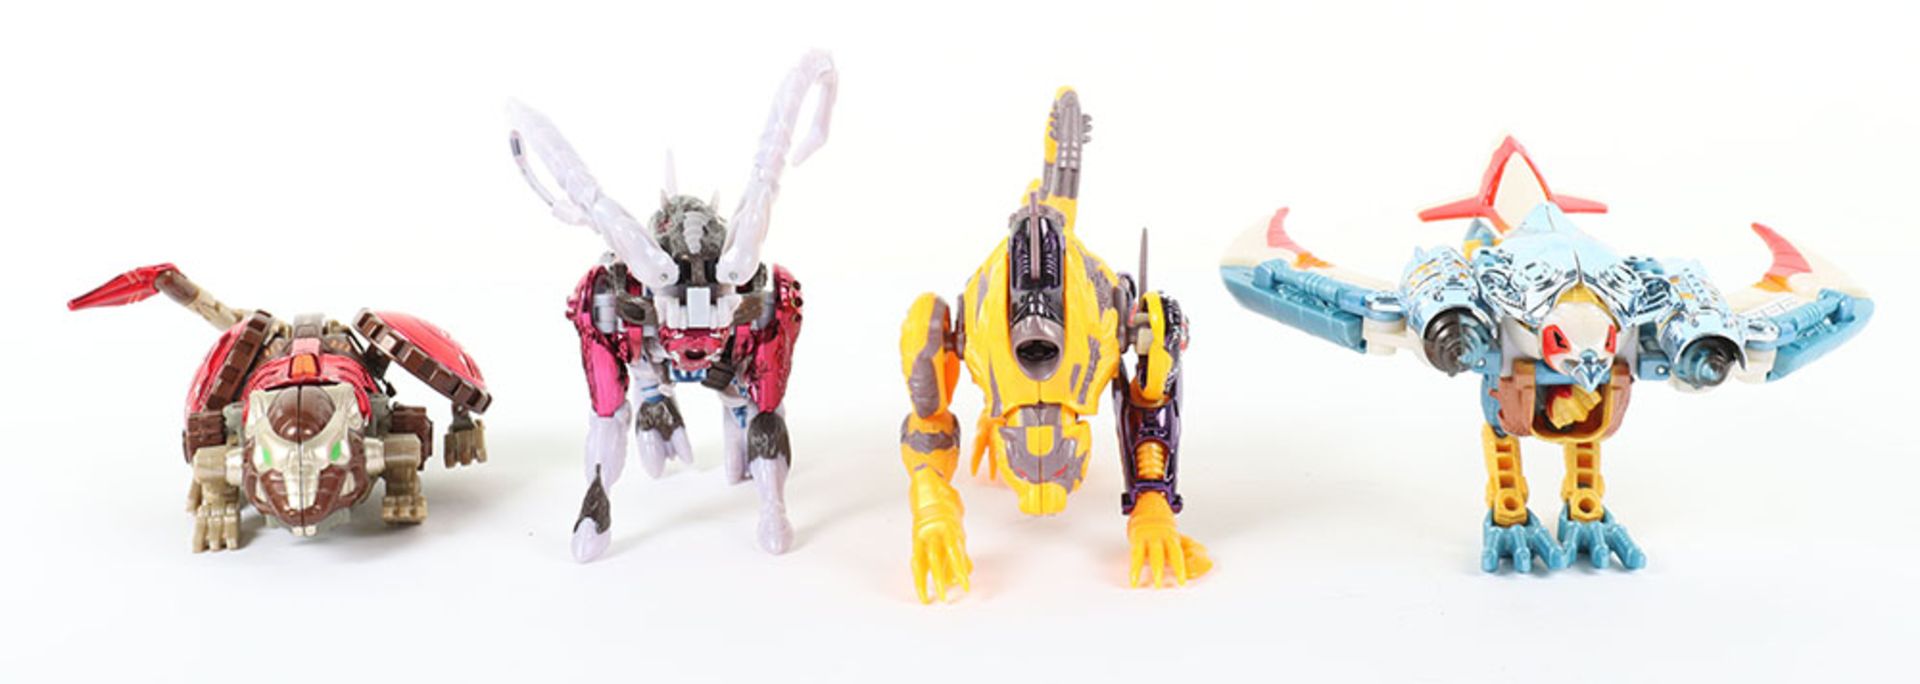 Hasbro Transformers Beast Wars Deluxe class figures